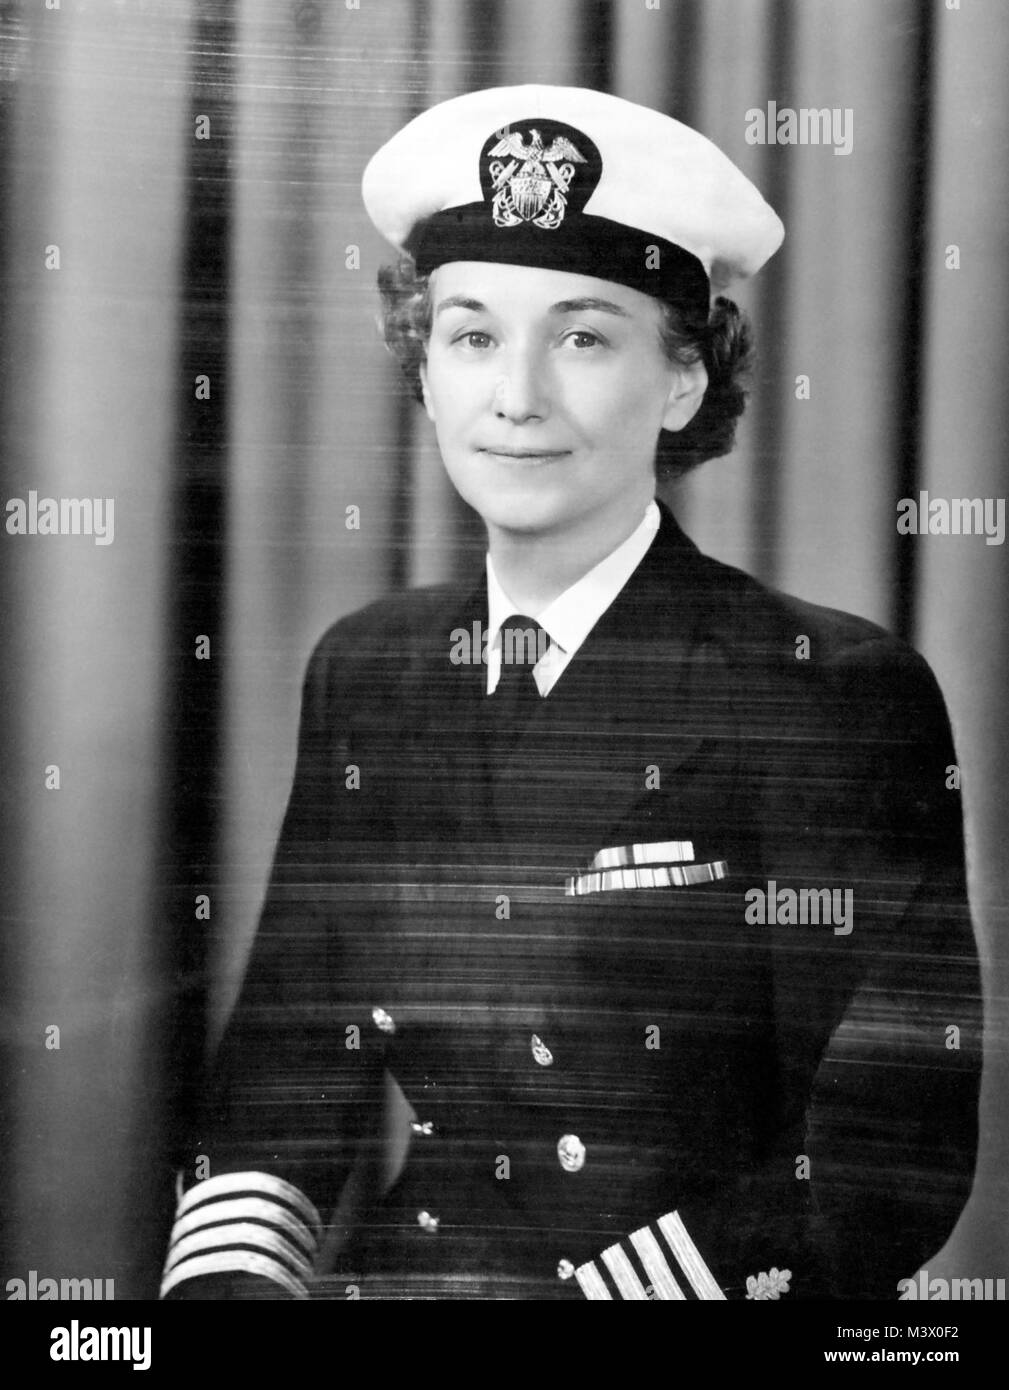 80-G--412873: Kapitän Winnie Gibson, NC, USN, 16. März 1950. Offizielle U.S. Navy Foto, jetzt in den Sammlungen der National Archives. (2018/01/31). 80-G--412873 39110958425 o Stockfoto